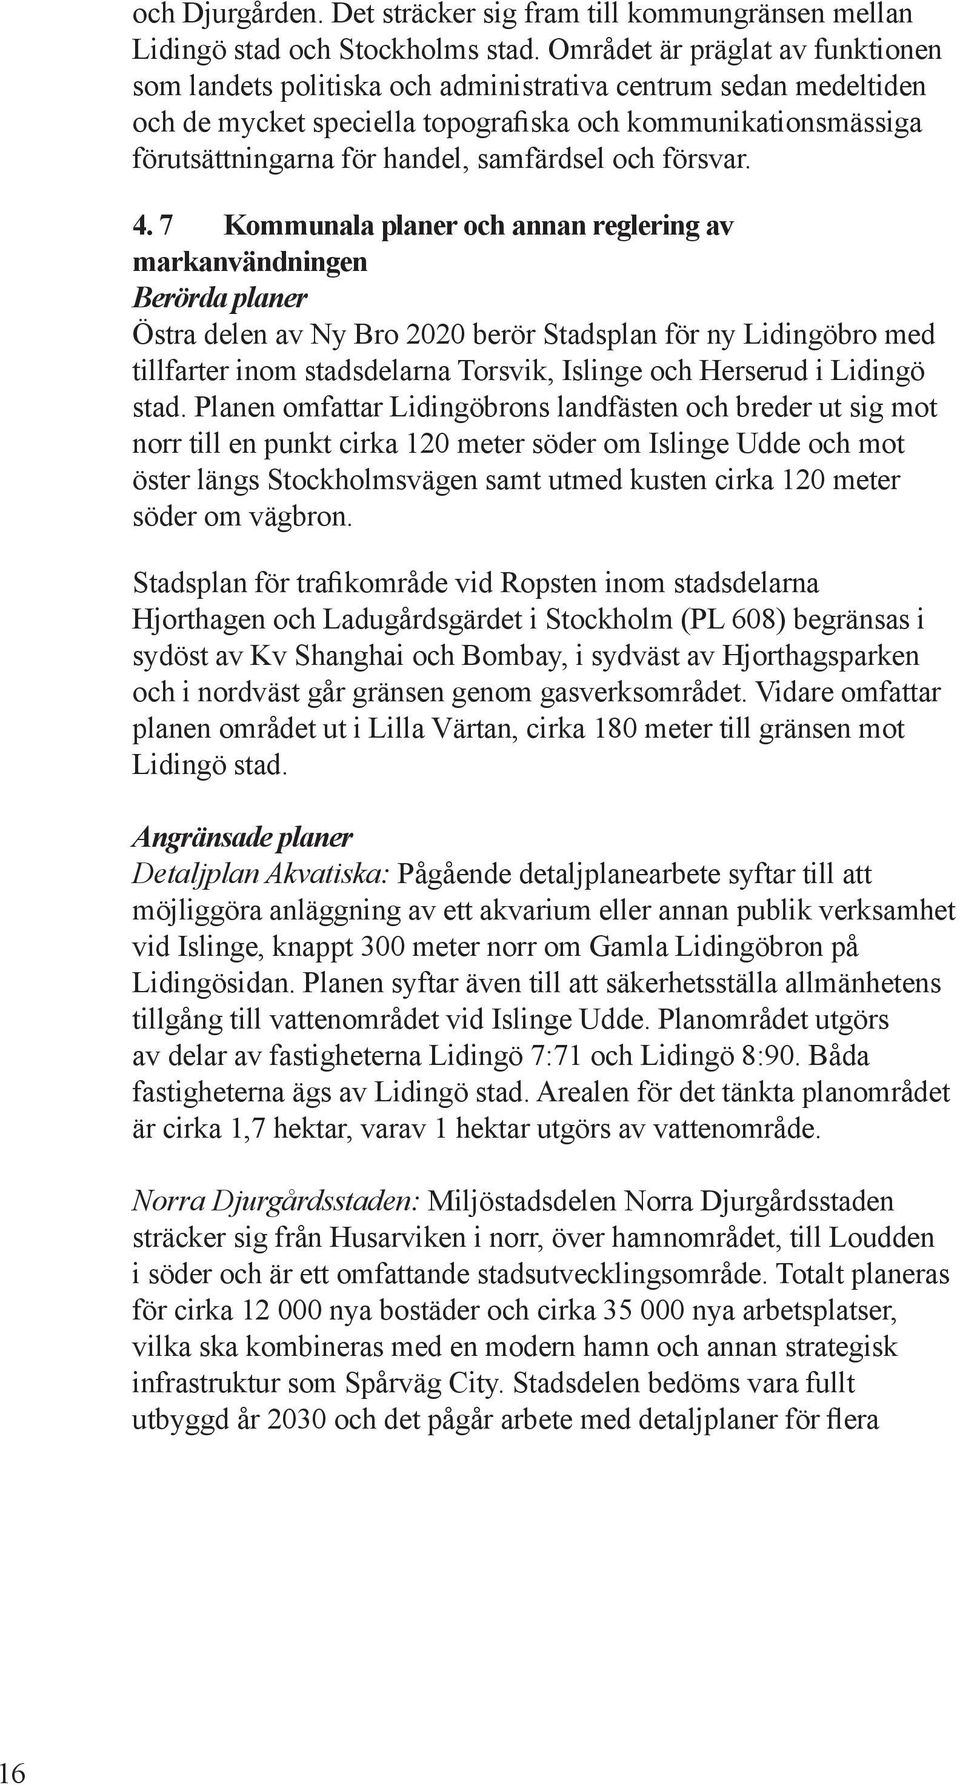 4. 7 Kommuala plaer och aa reglerig av markavädig Berörda plaer Östra del av Ny Bro 2020 berör Stadspla för y göbro med tillfarter iom stadsdelara orsvik, Isli och i gö stad.